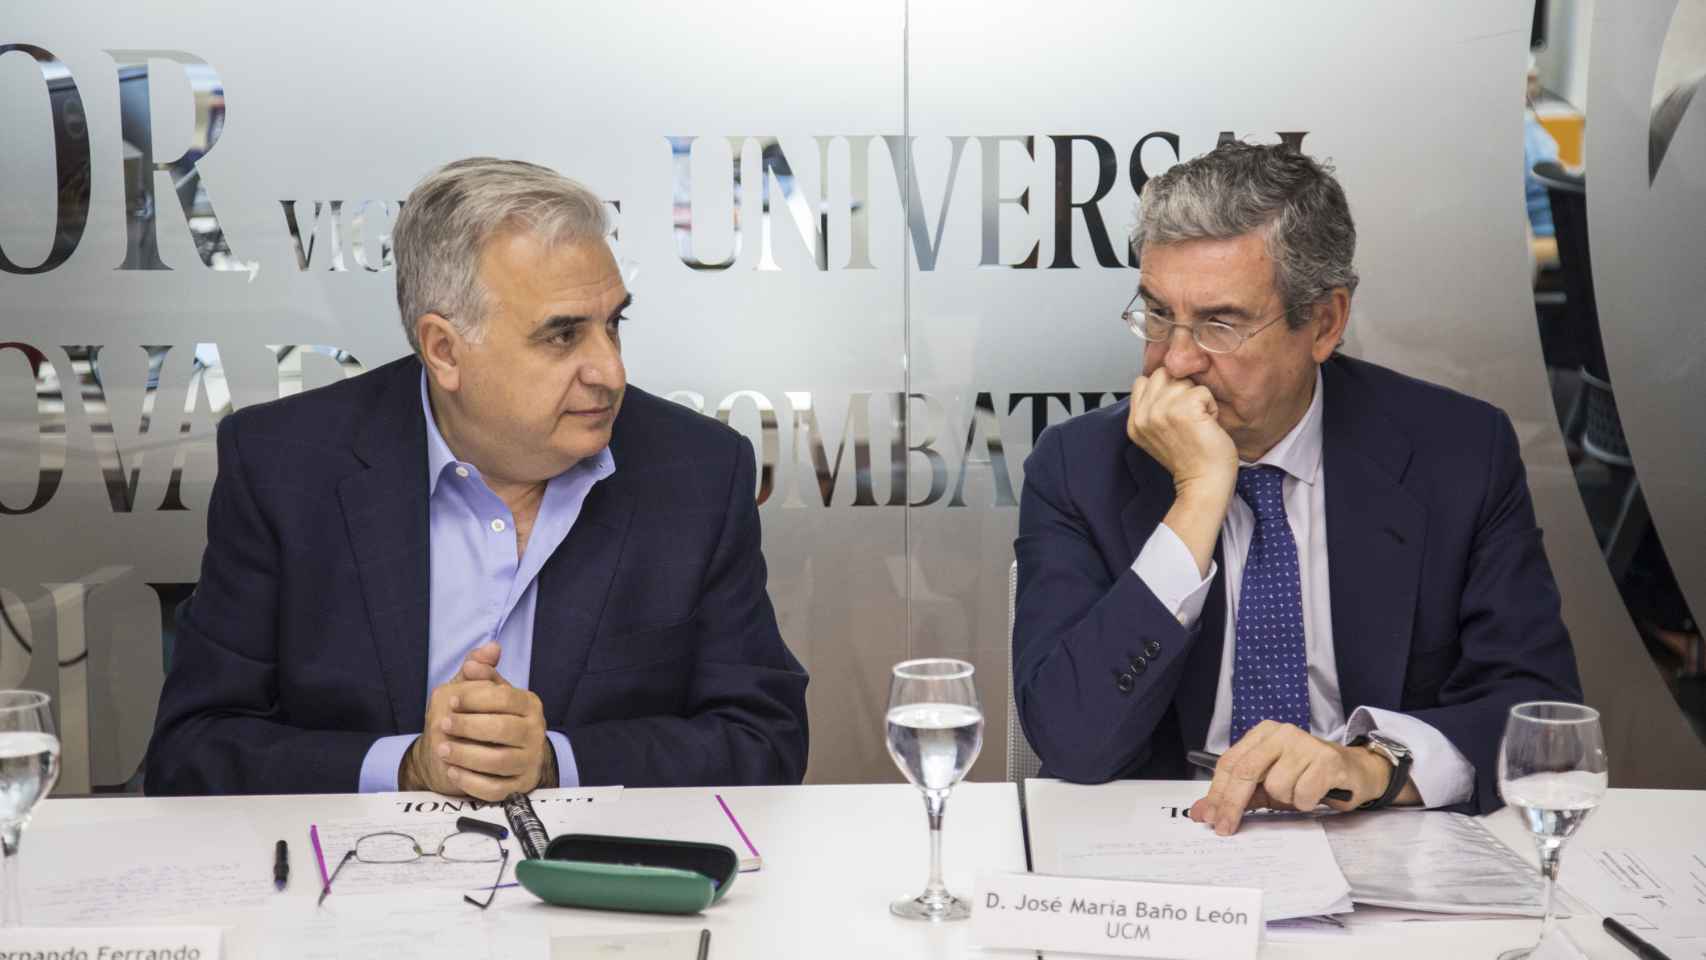 Fernando Ferrando, Vicepresidente de la Fundación Renovables y José María Baño León, Catedrático de Derecho Administrativo en la Universidad Complutense de Madrid en el foro de debate.